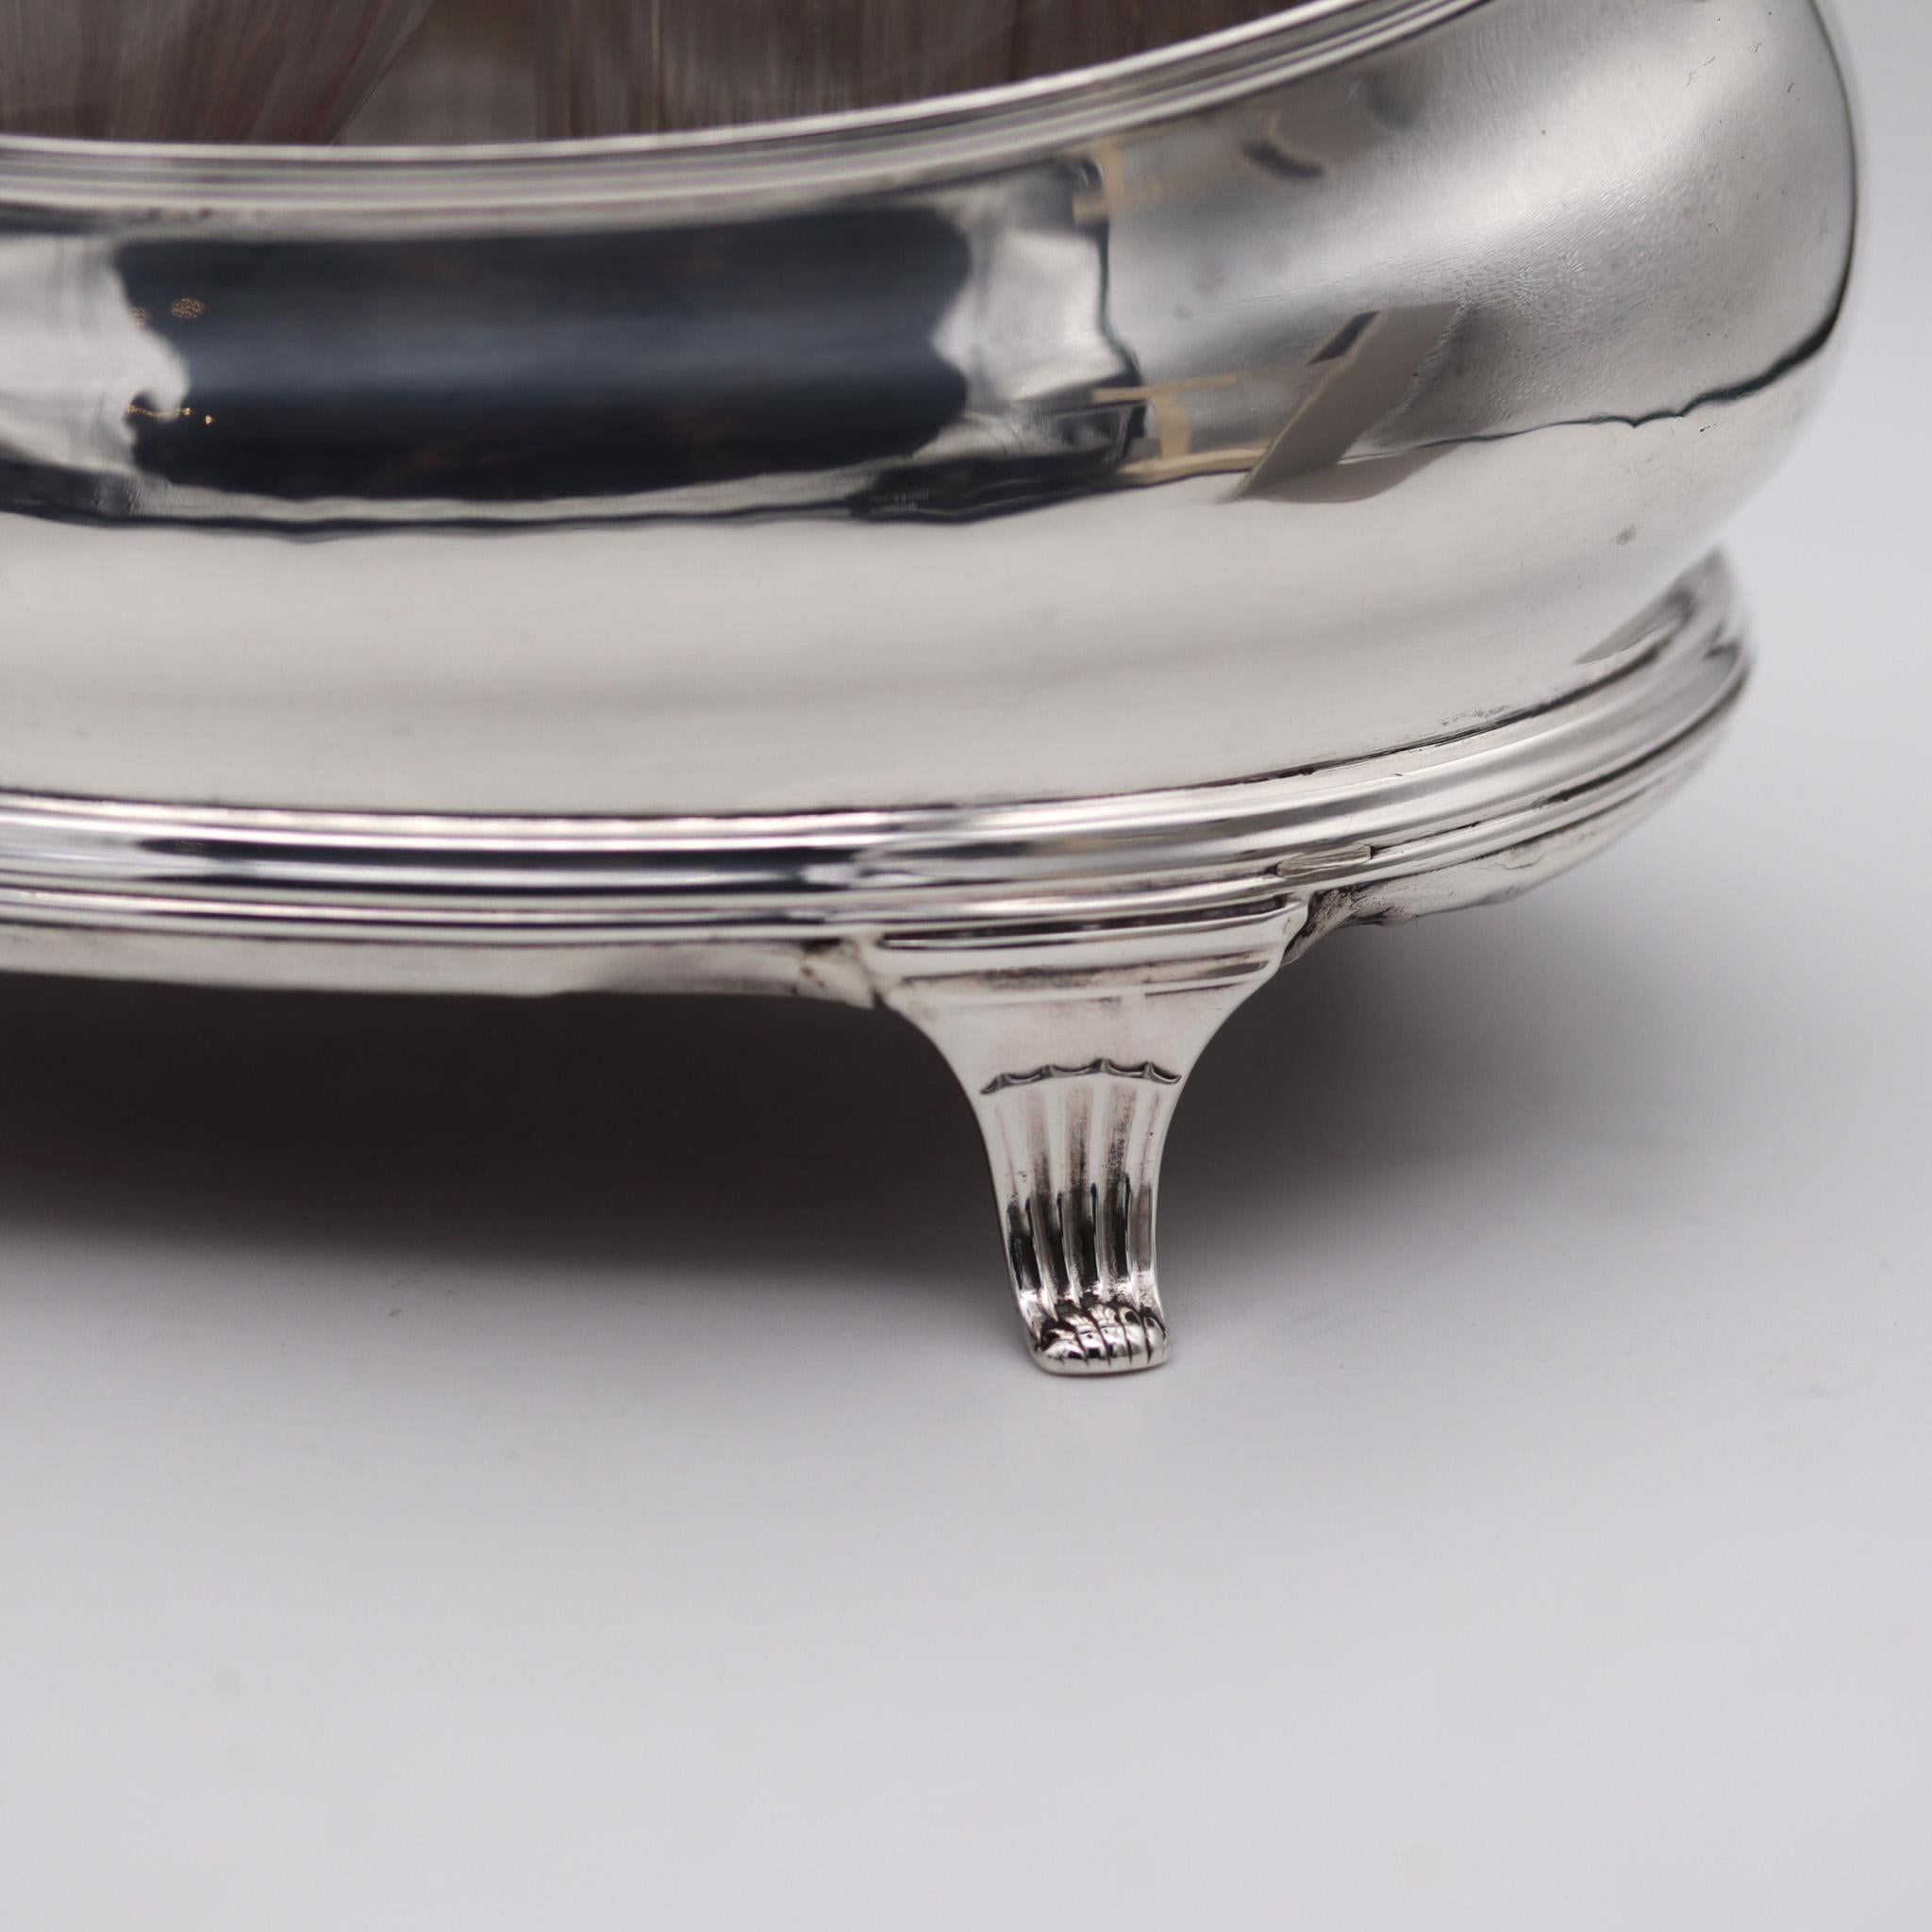 Georgianisches Tiegelset, entworfen von Peter, Ann & William Bateman.

Hier bieten wir eine sehr schöne und elegante georgianische Silber & geschliffenes Glas acht Flasche cruet in seinem ursprünglichen Stand. Dieses seltene Stück wurde 1802 in